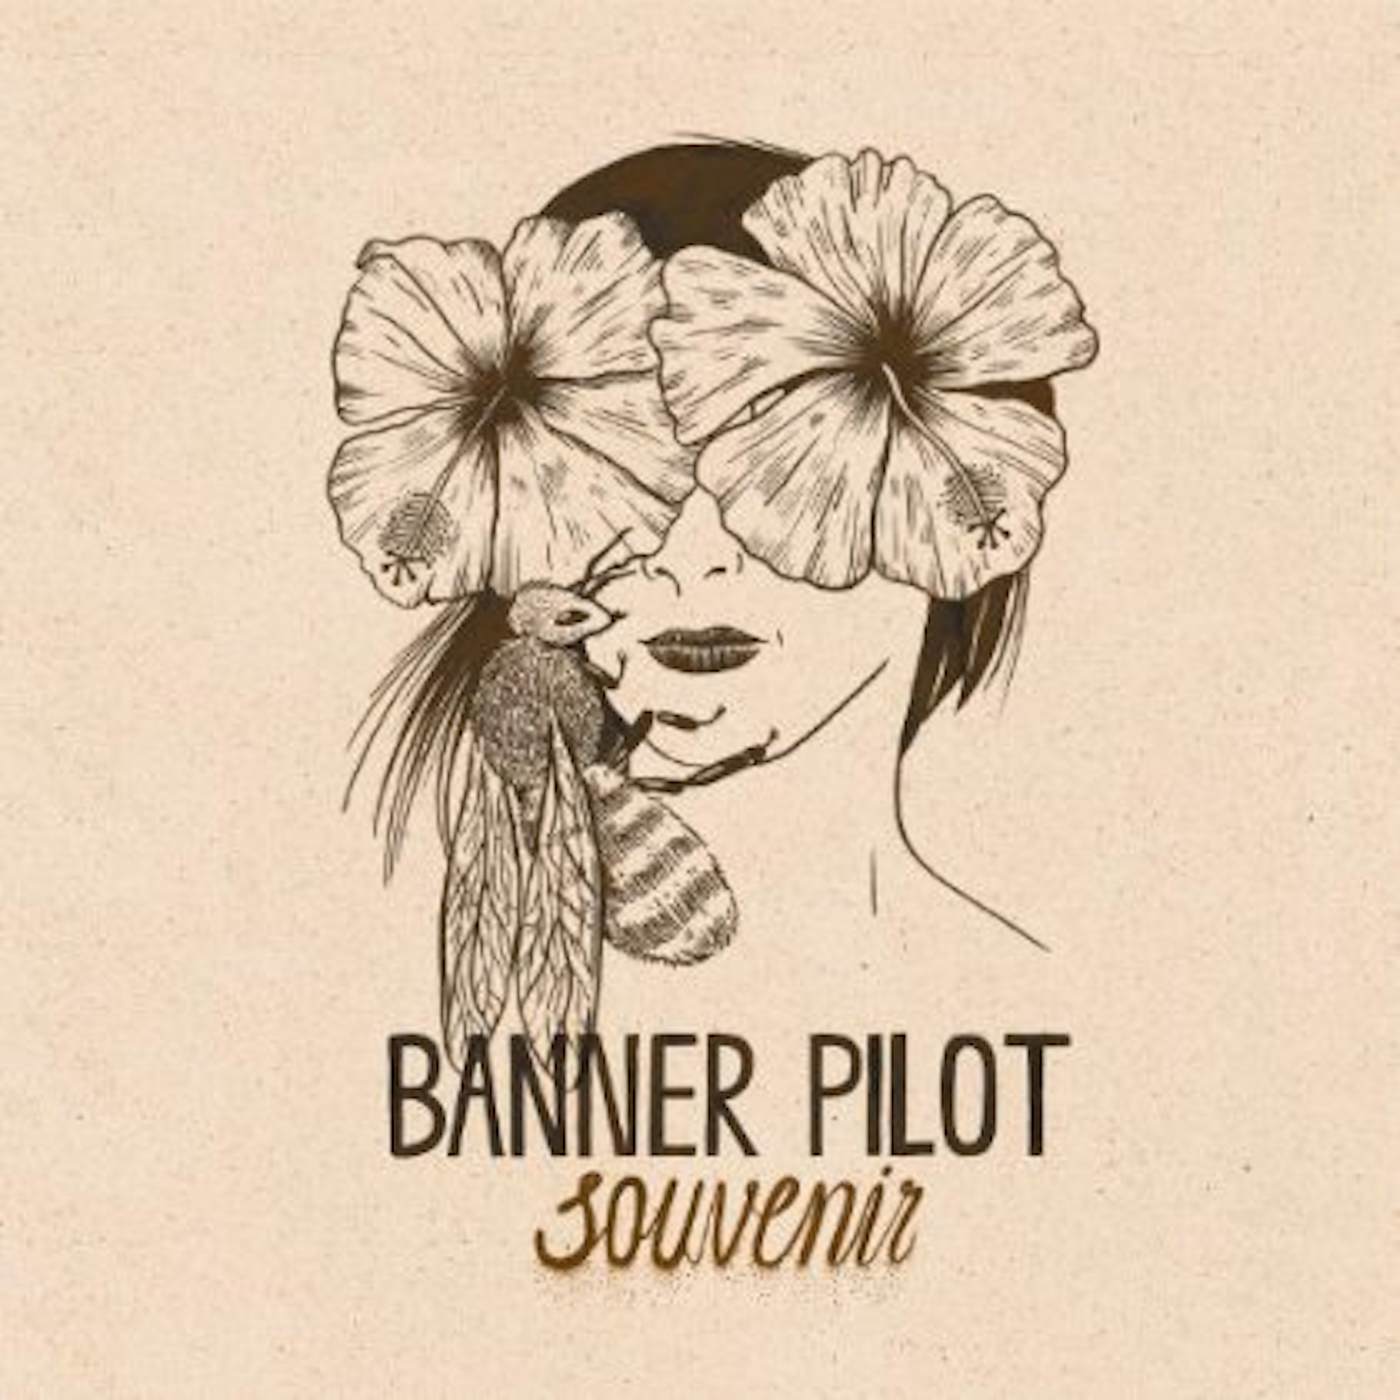 Banner Pilot SOUVENIR CD